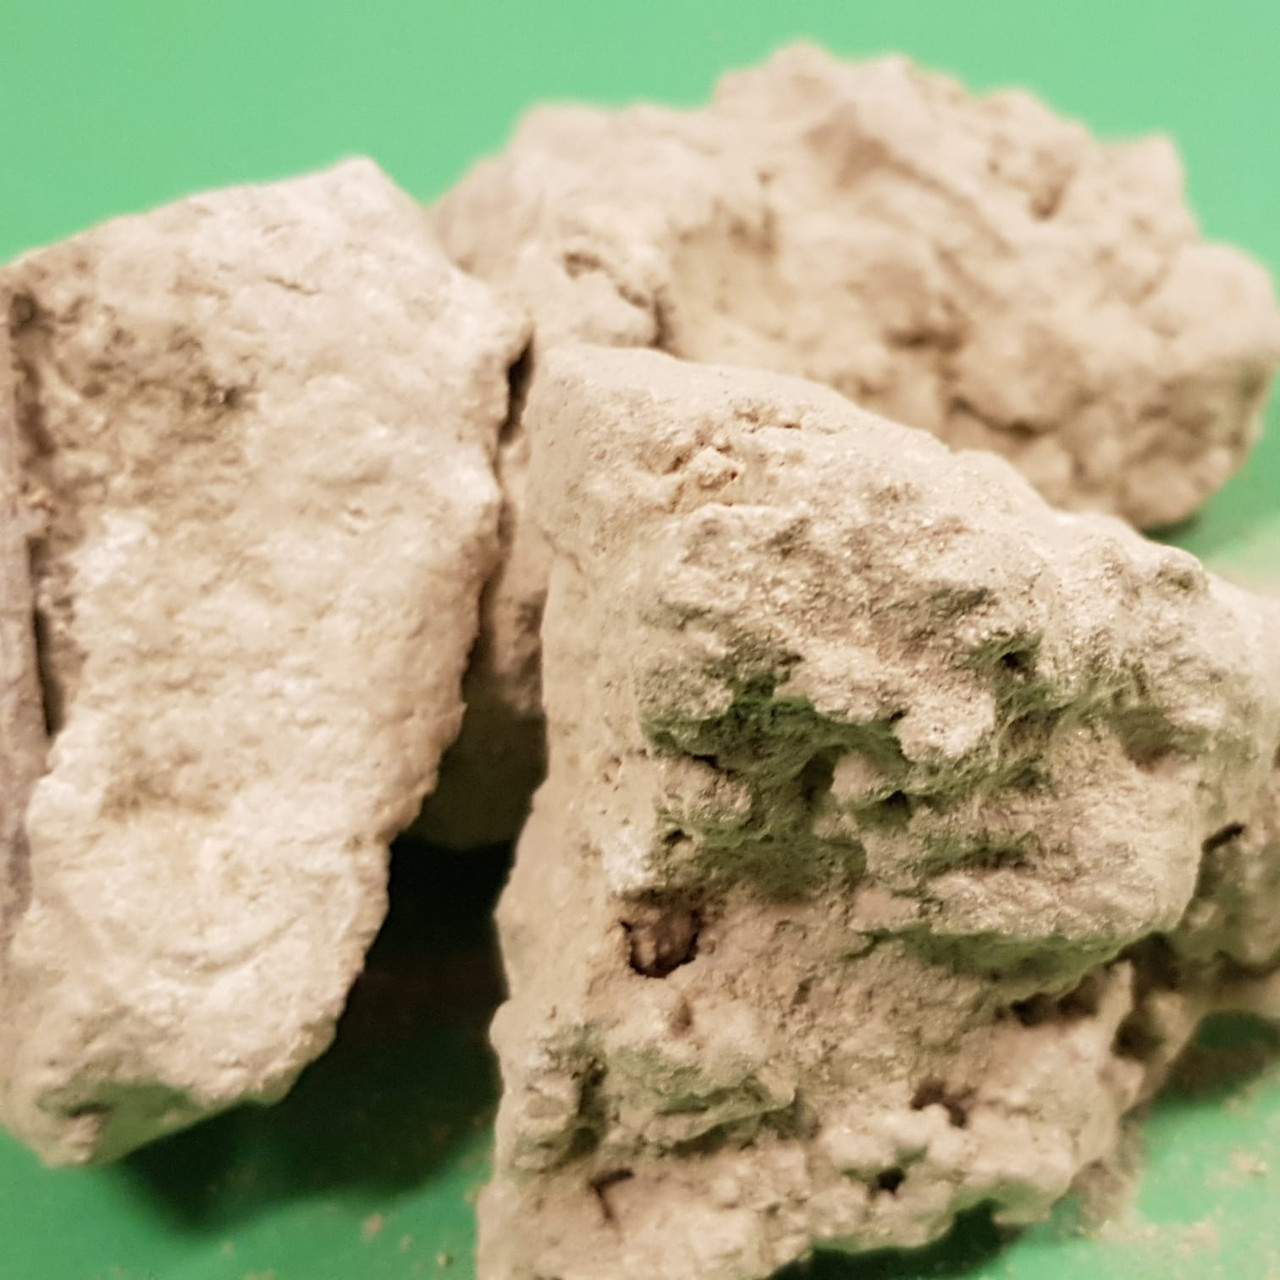 African Rock Salt/ Sel de Gemme 100g